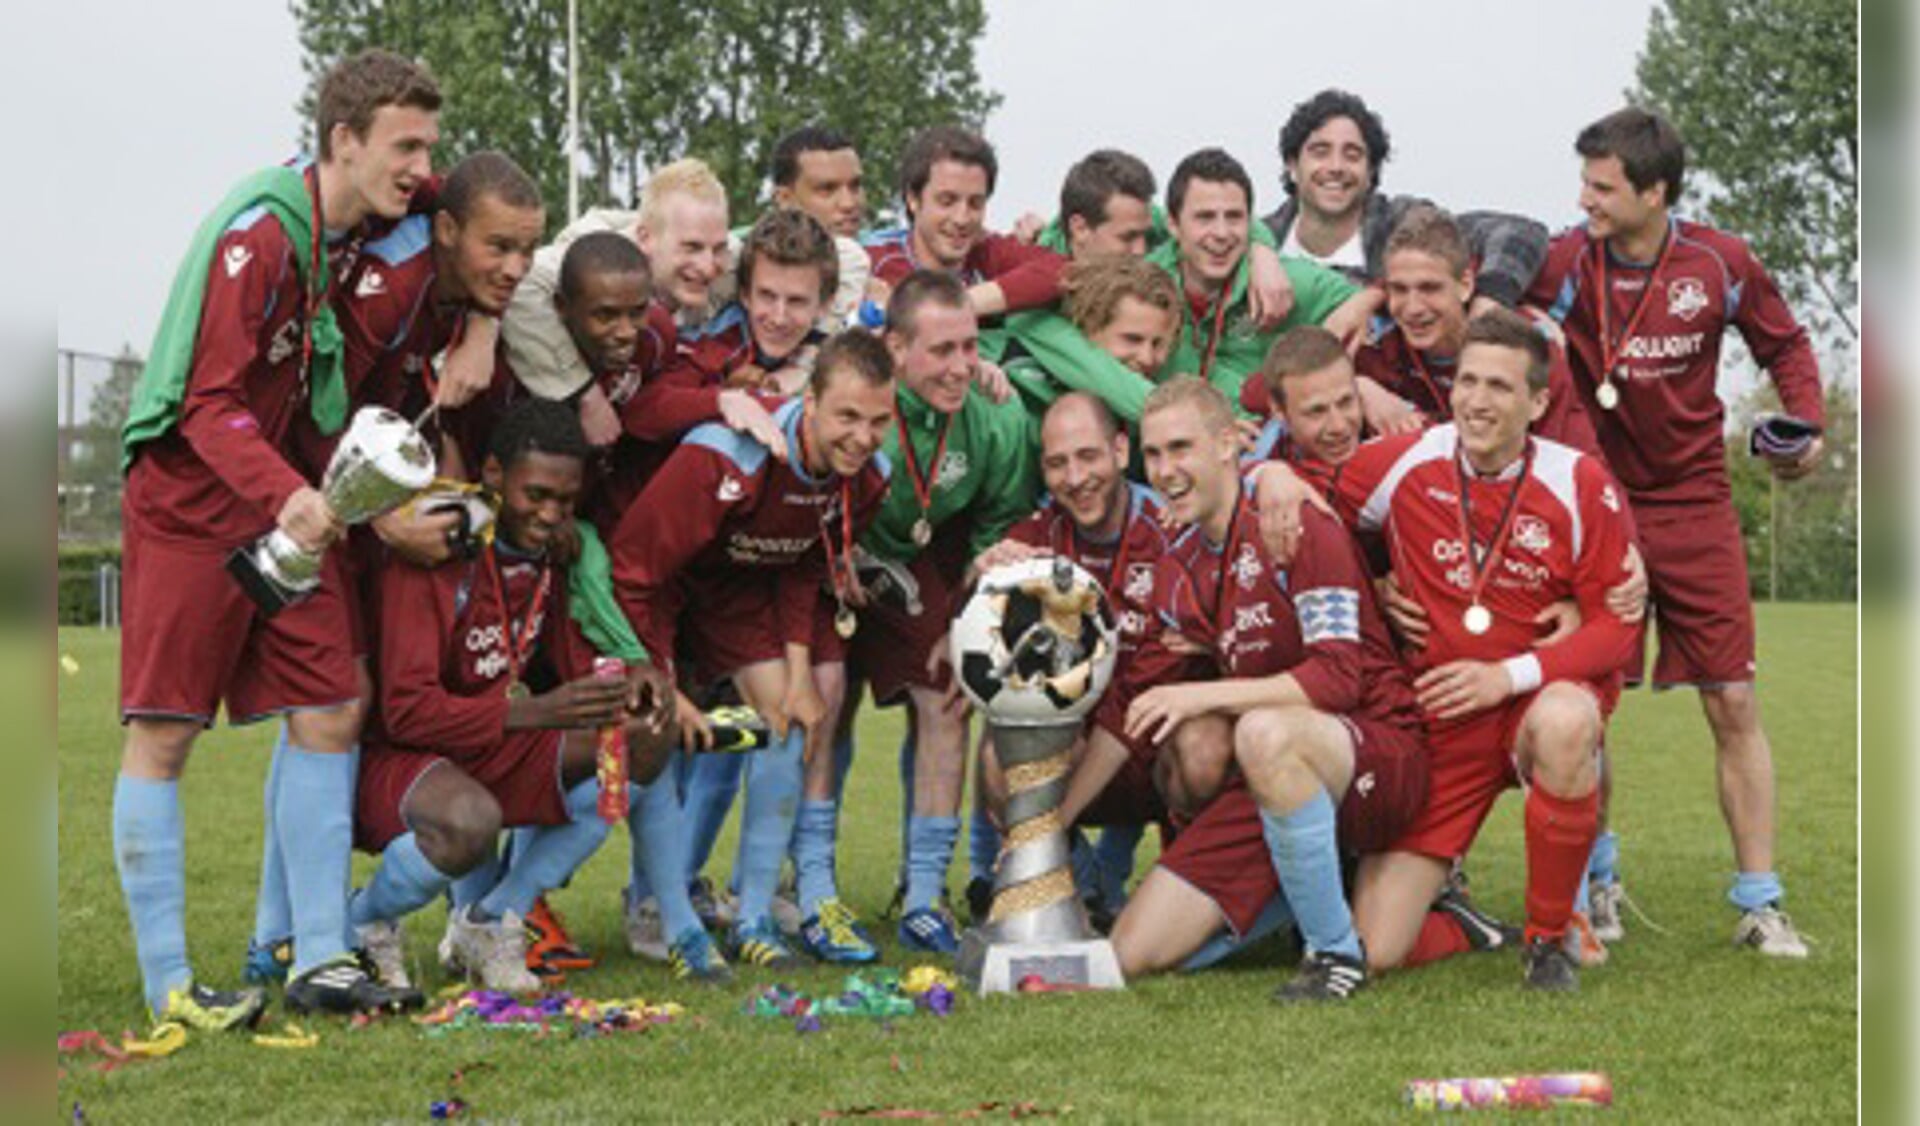 Baronie heeft het Bredaas kampioenschap gewonnen. foto voetbalinbreda.nl